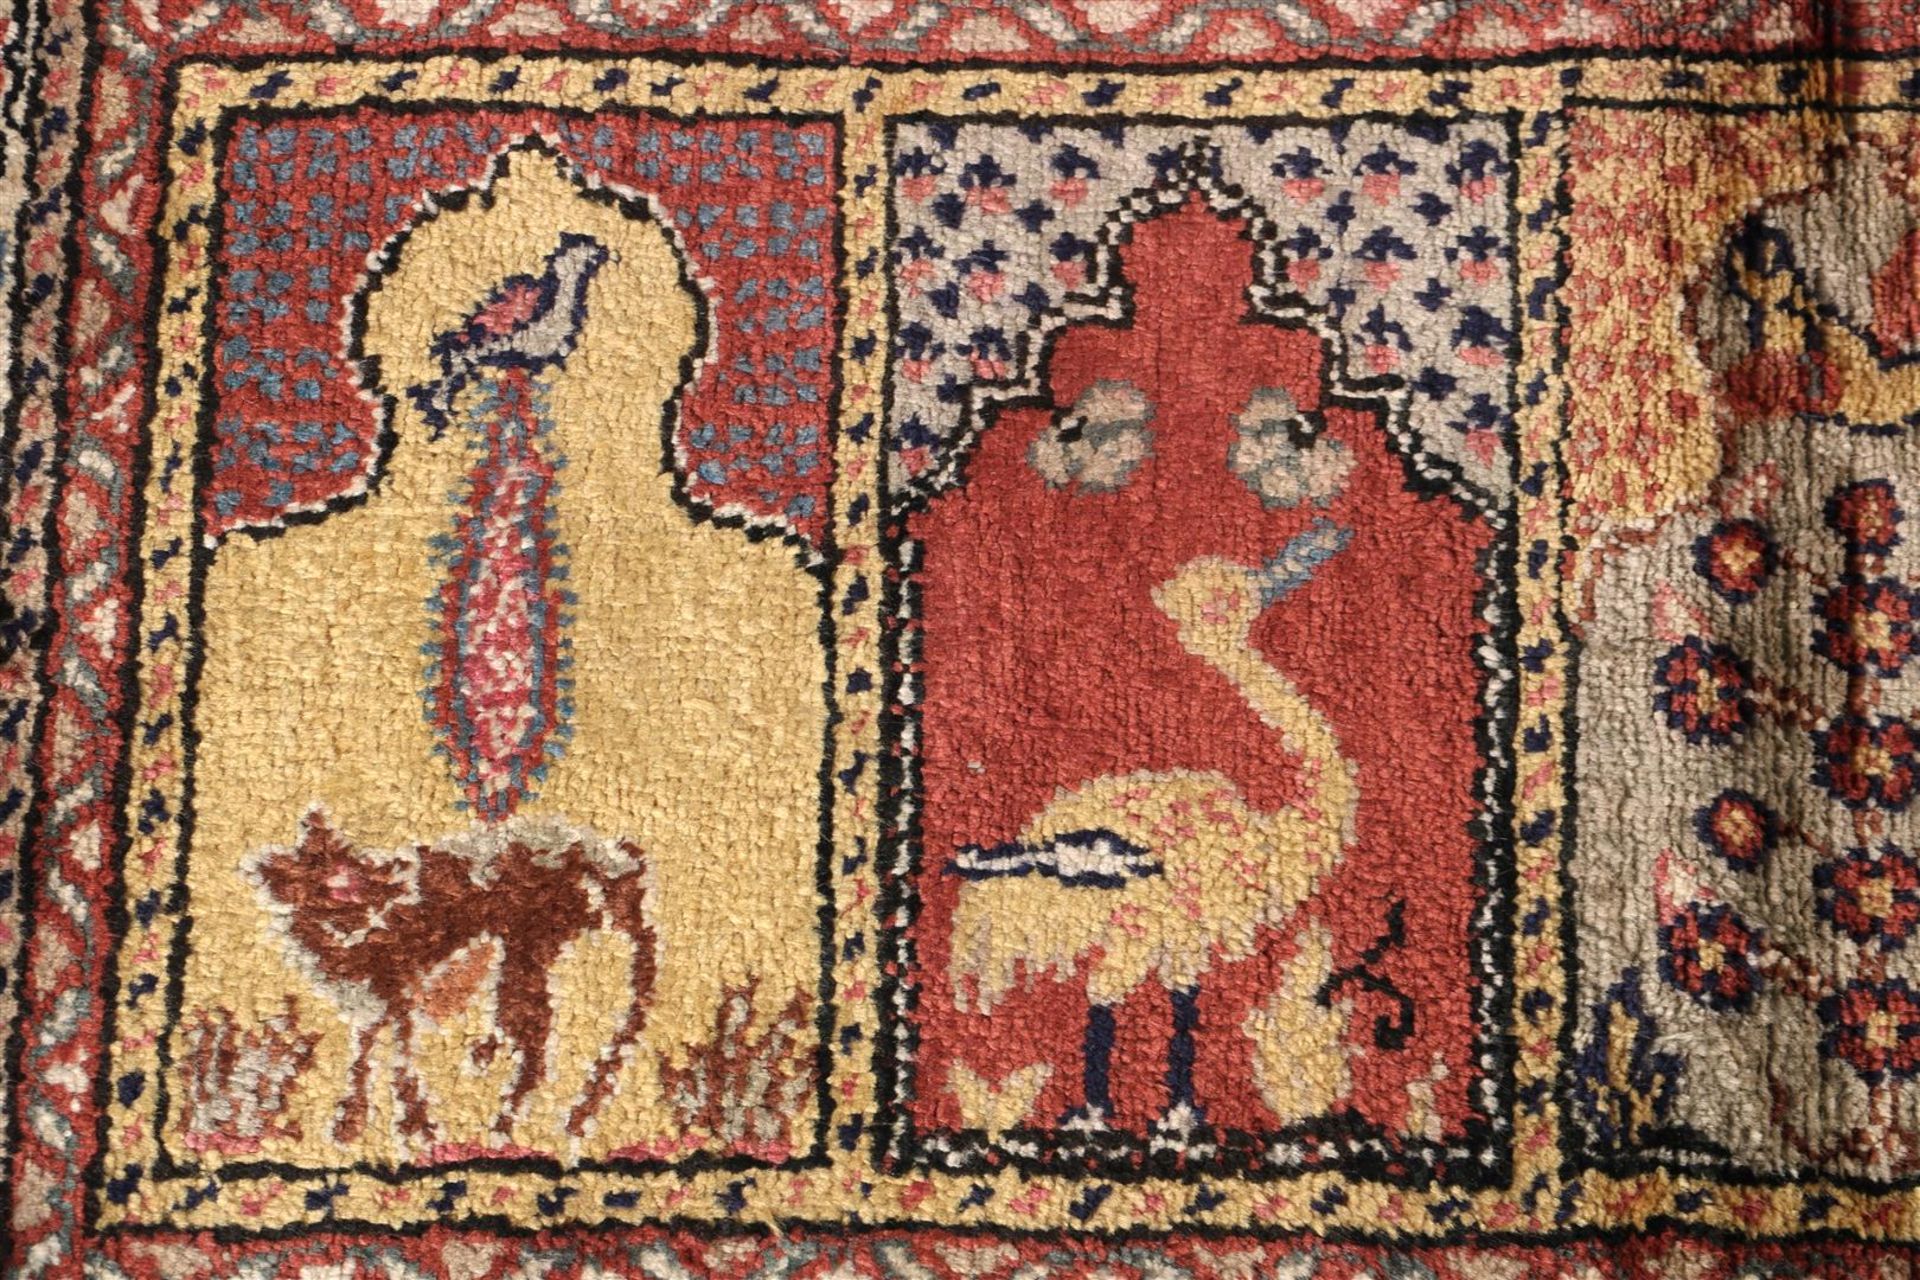 Kayseri carpet - Image 2 of 3